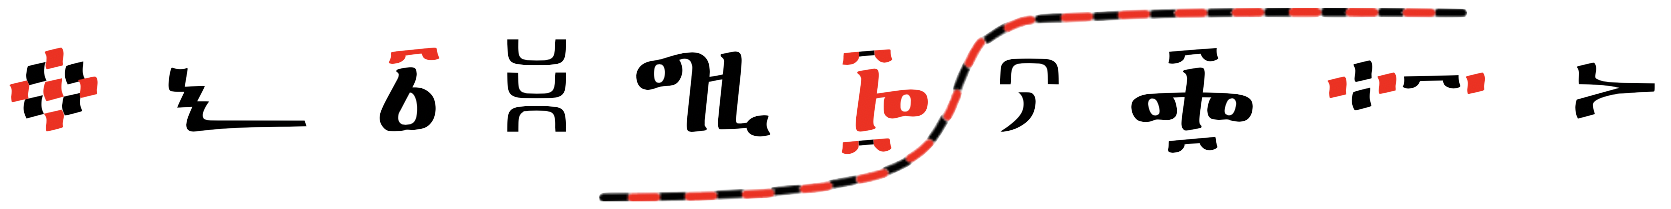 EMUFI project logo